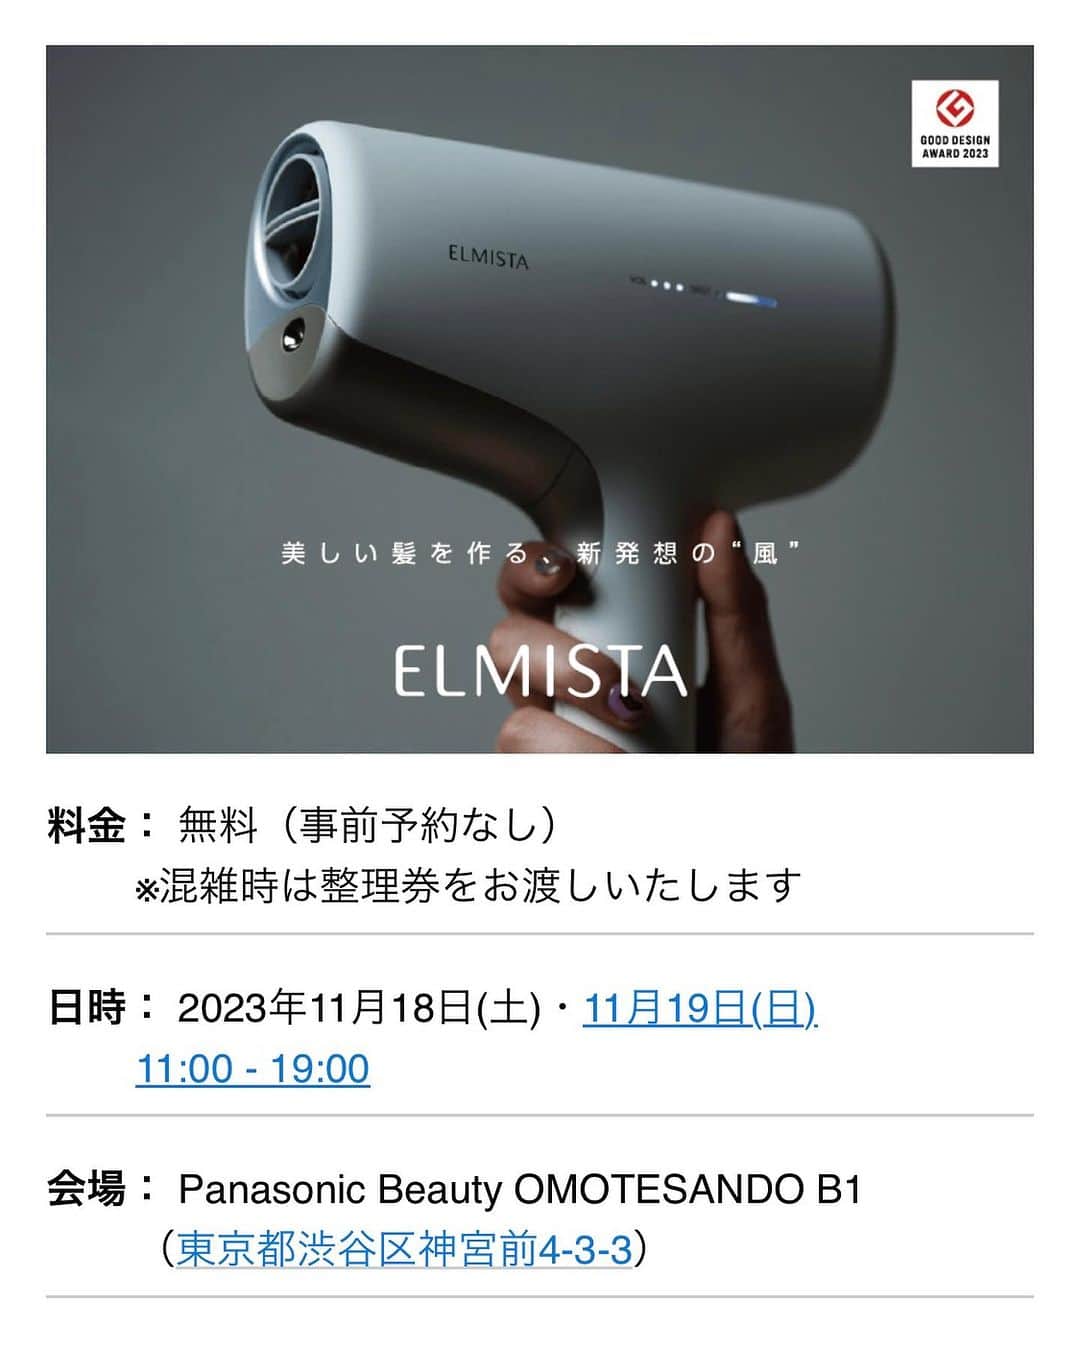 株式会社 MILBON（ミルボン）のインスタグラム：「2023/11/18～19（土・日） Panasonic Beauty表参道にて、 エルミスタヘアードライヤー体験会実施中✨  料金：無料（事前予約なし） ※混雑時は整理券をお渡しいたします 日時：2023年11月18日(土)・11月19日(日)　11:00 - 19:00 会場：Panasonic Beauty OMOTESANDO　B1 （東京都渋谷区神宮前4-3-3）  会場の詳細はこちら https://panasonic.jp/beauty/omotesando.html  当日ご来場くださった方には、その場でお好きなAujuaのミニパウチを1セットプレゼント。 ミルボン社員一同、みなさまにお会いできることを楽しみにしております！  #ミルボン #milbon #エルミスタ #ヘアードライヤー #ドライヤー #パナソニック #パナソニック表参道 #表参道 #オージュア #aujua #ヘアケア #美容液」